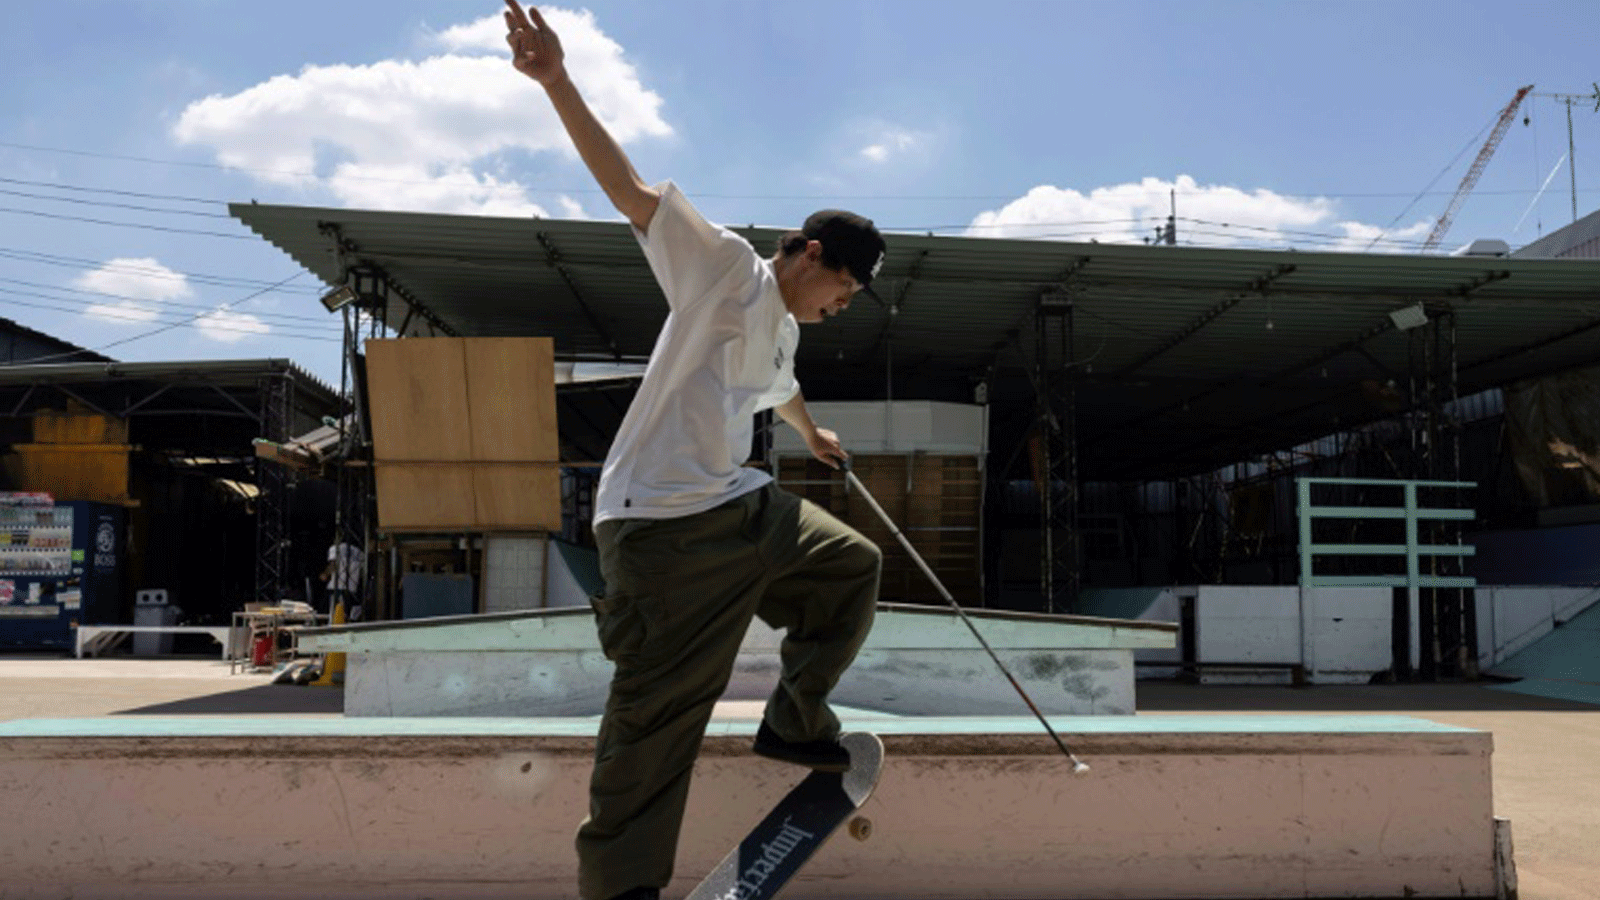 الياباني ريوسي أوتشي عاشق رياضة السكايت بورد الذي يعاني من إعاقة بصرية يؤدي حيله بمساعدة عصا